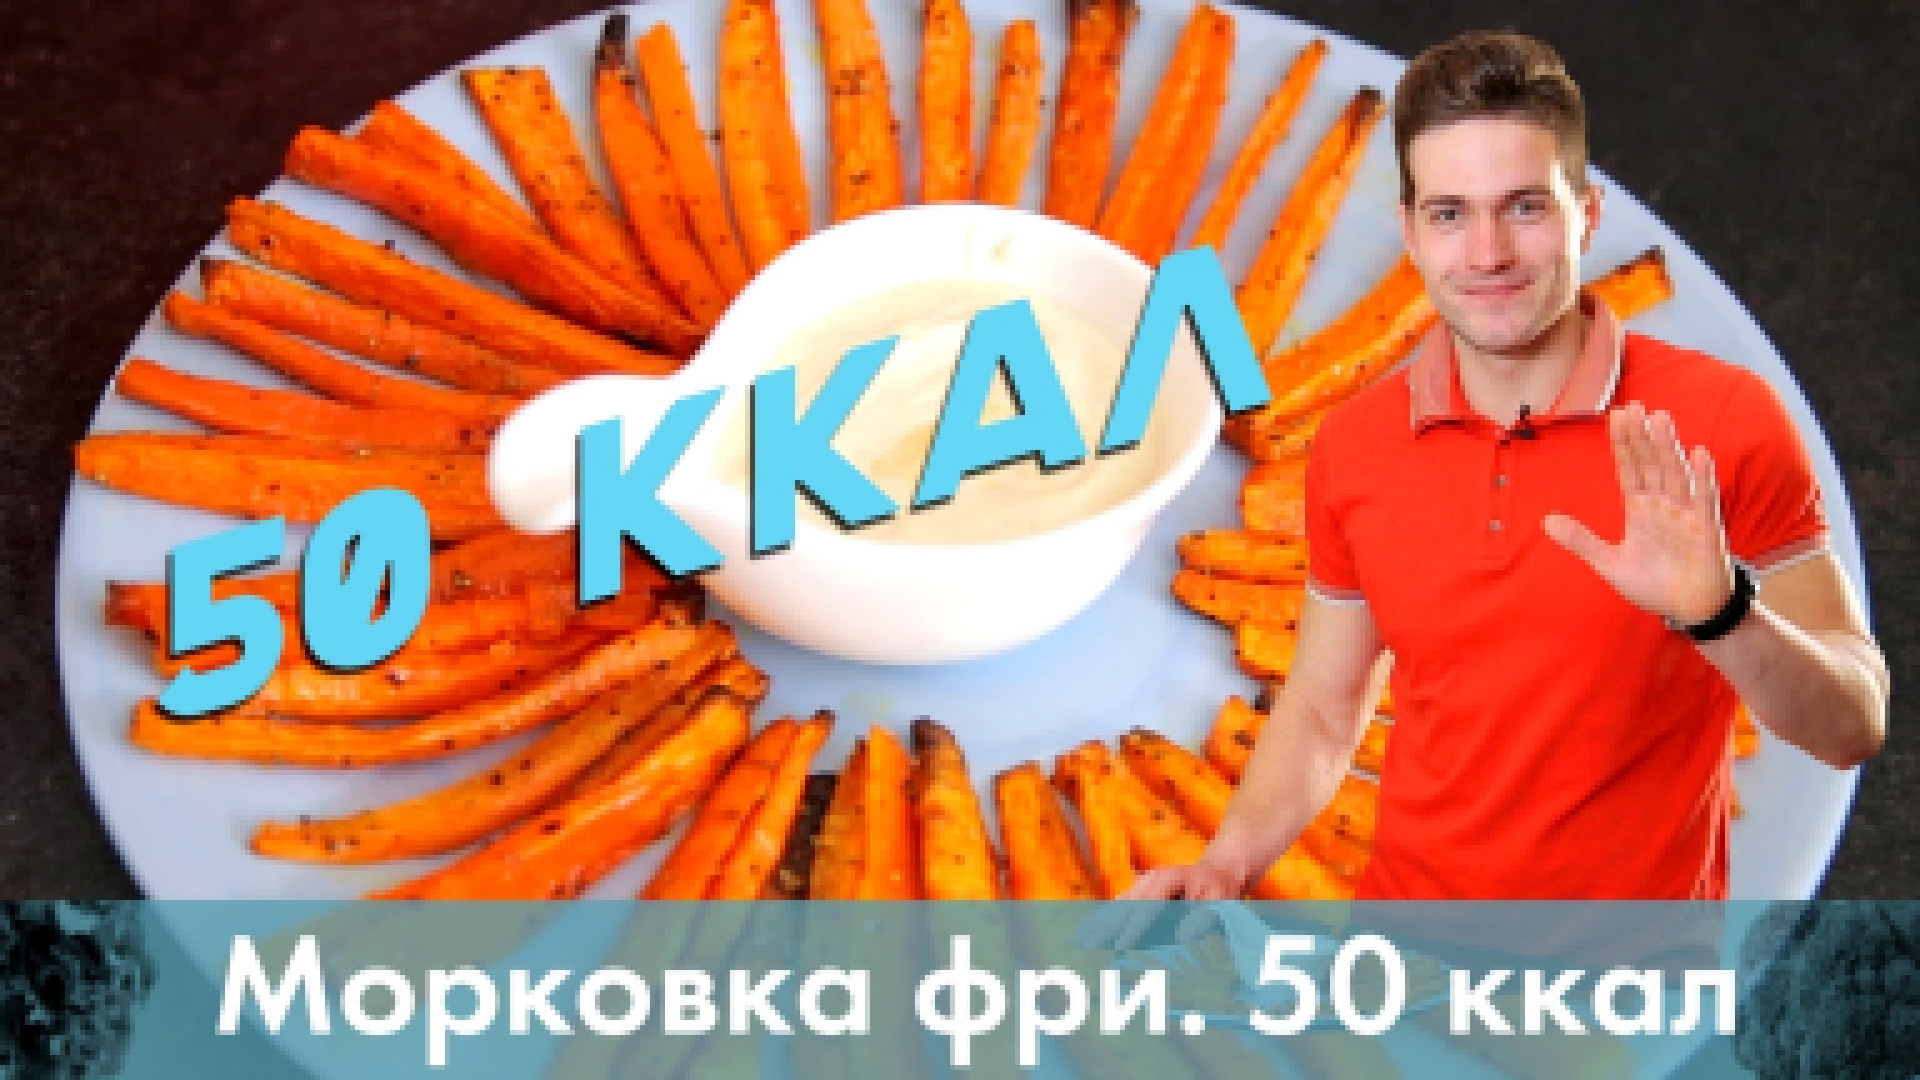 Морковка фри. Полезный перекус на 50 ккал [Лаборатория Workout] 